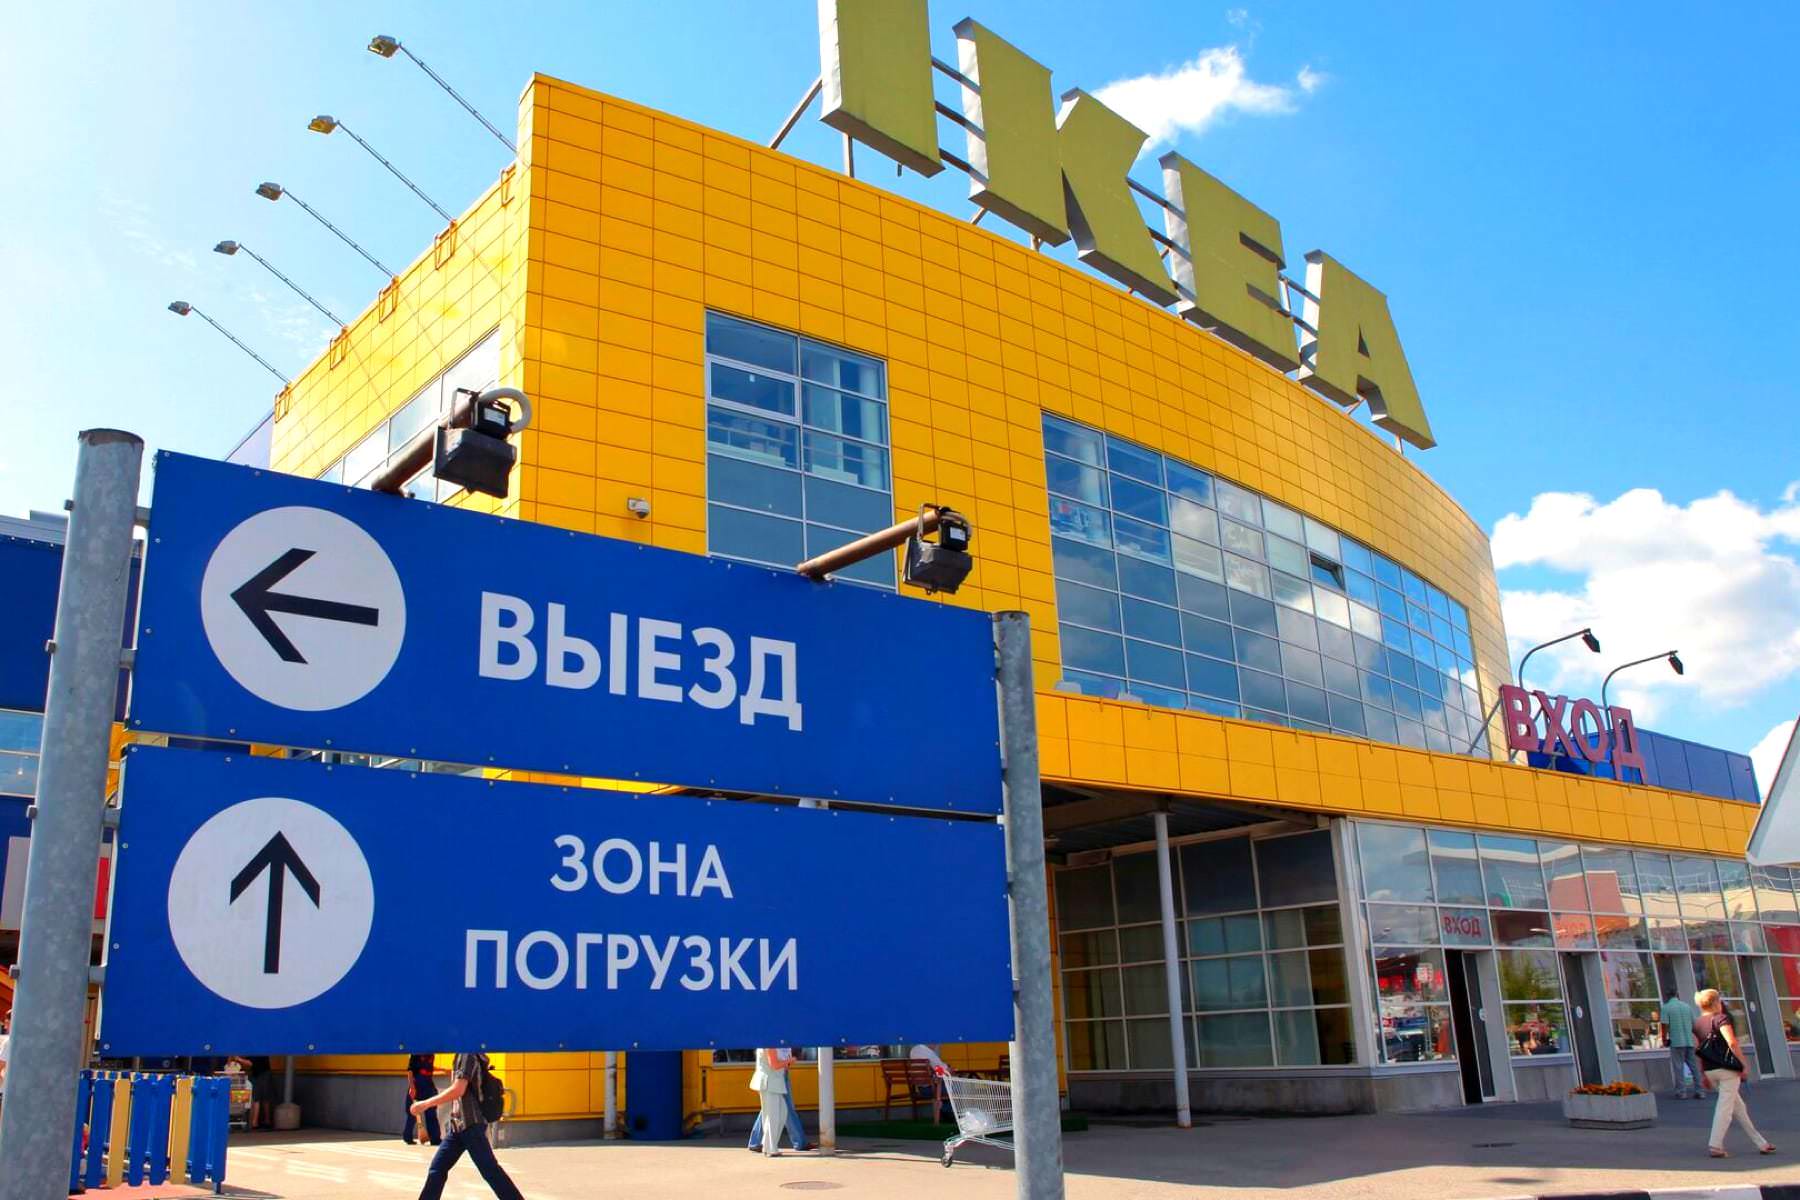 Долгожданный день. Товары IKEA поступили в продажу по всей России